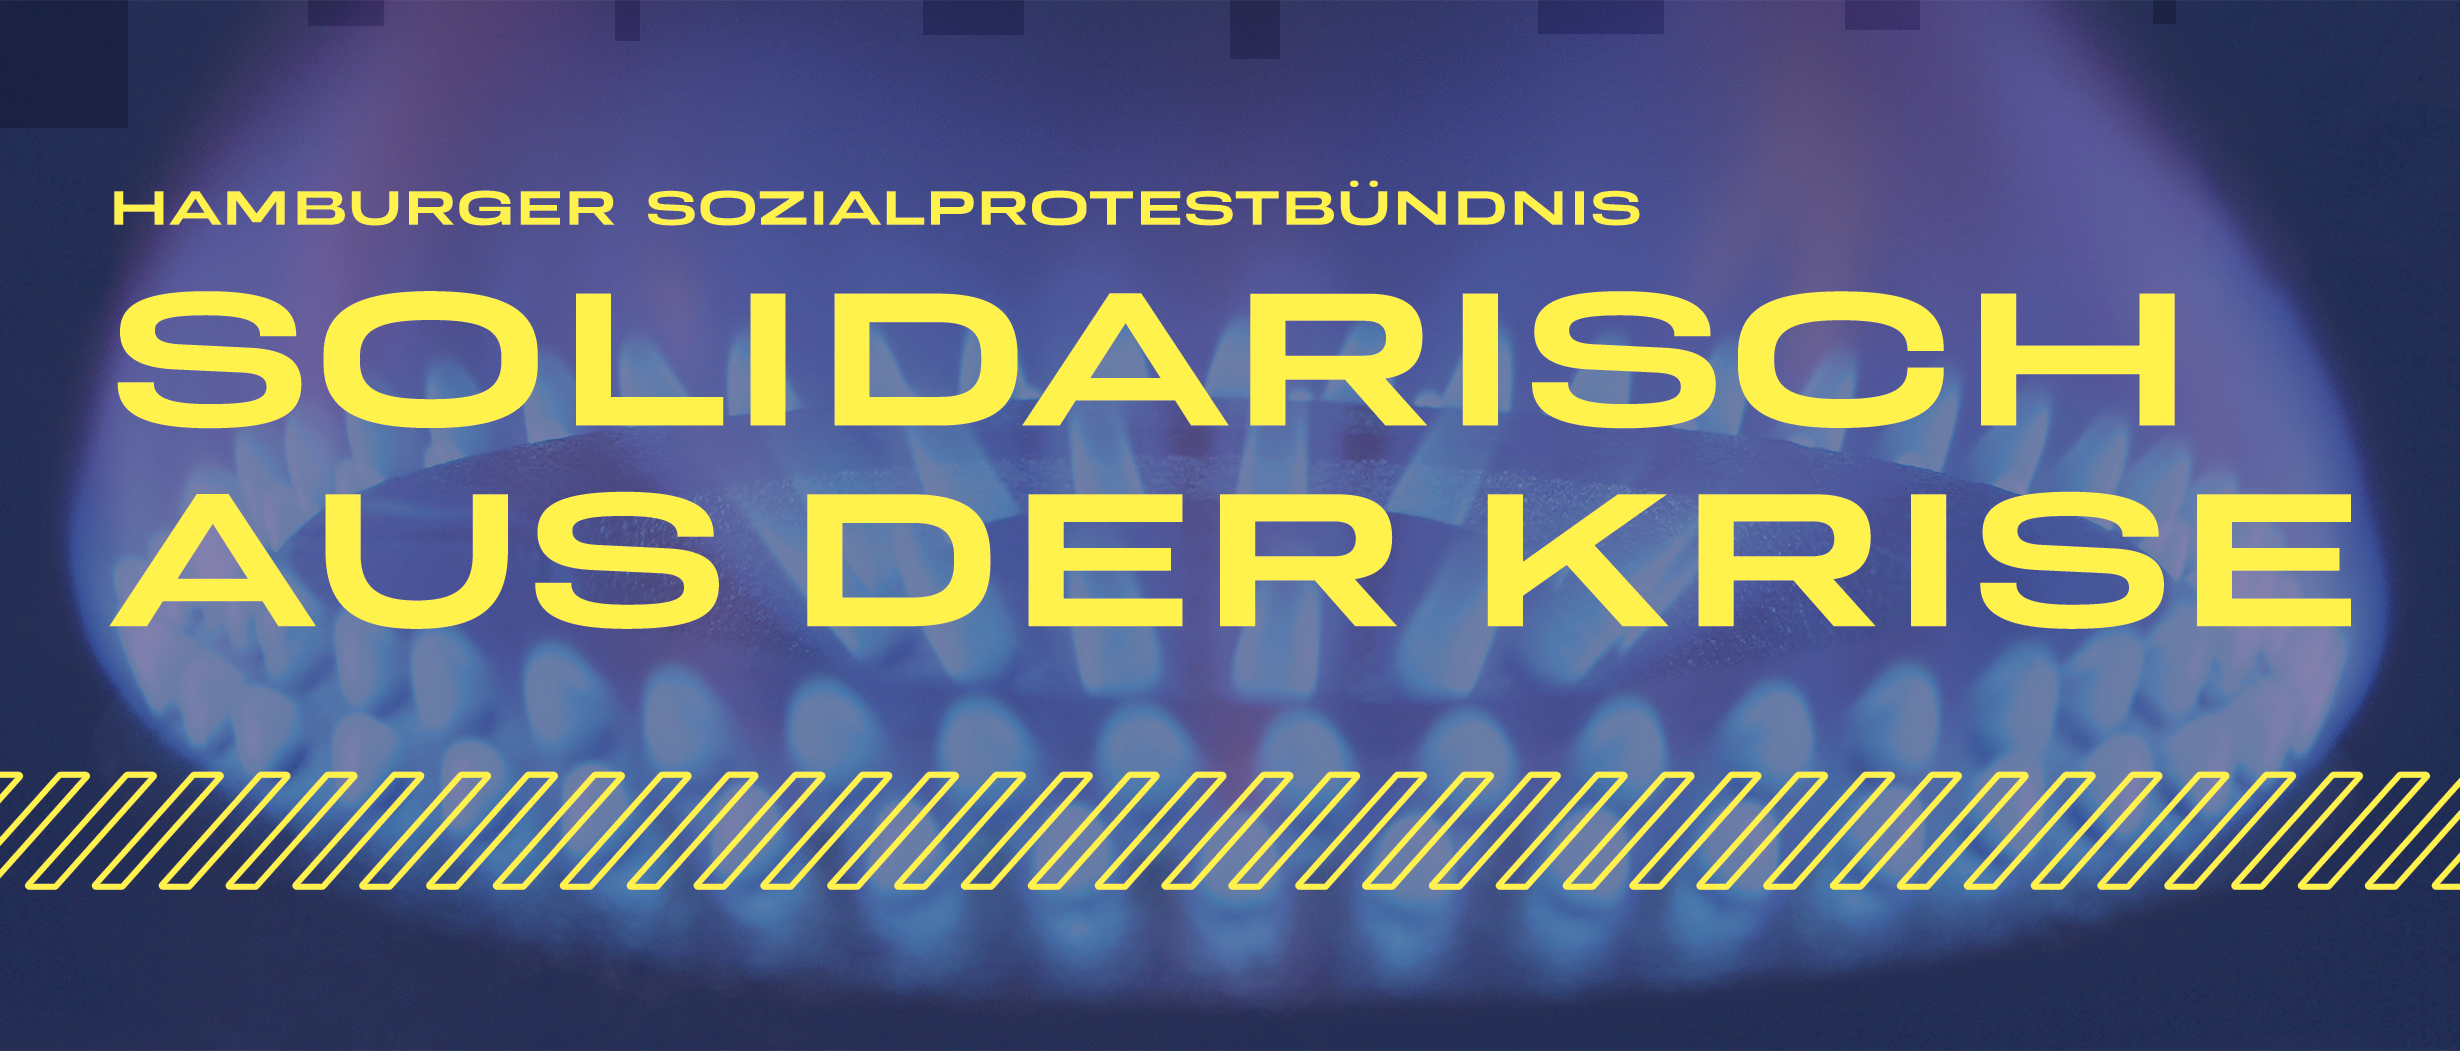 Solidarisch aus der Krise - Hamburger Sozialprotestbündnis